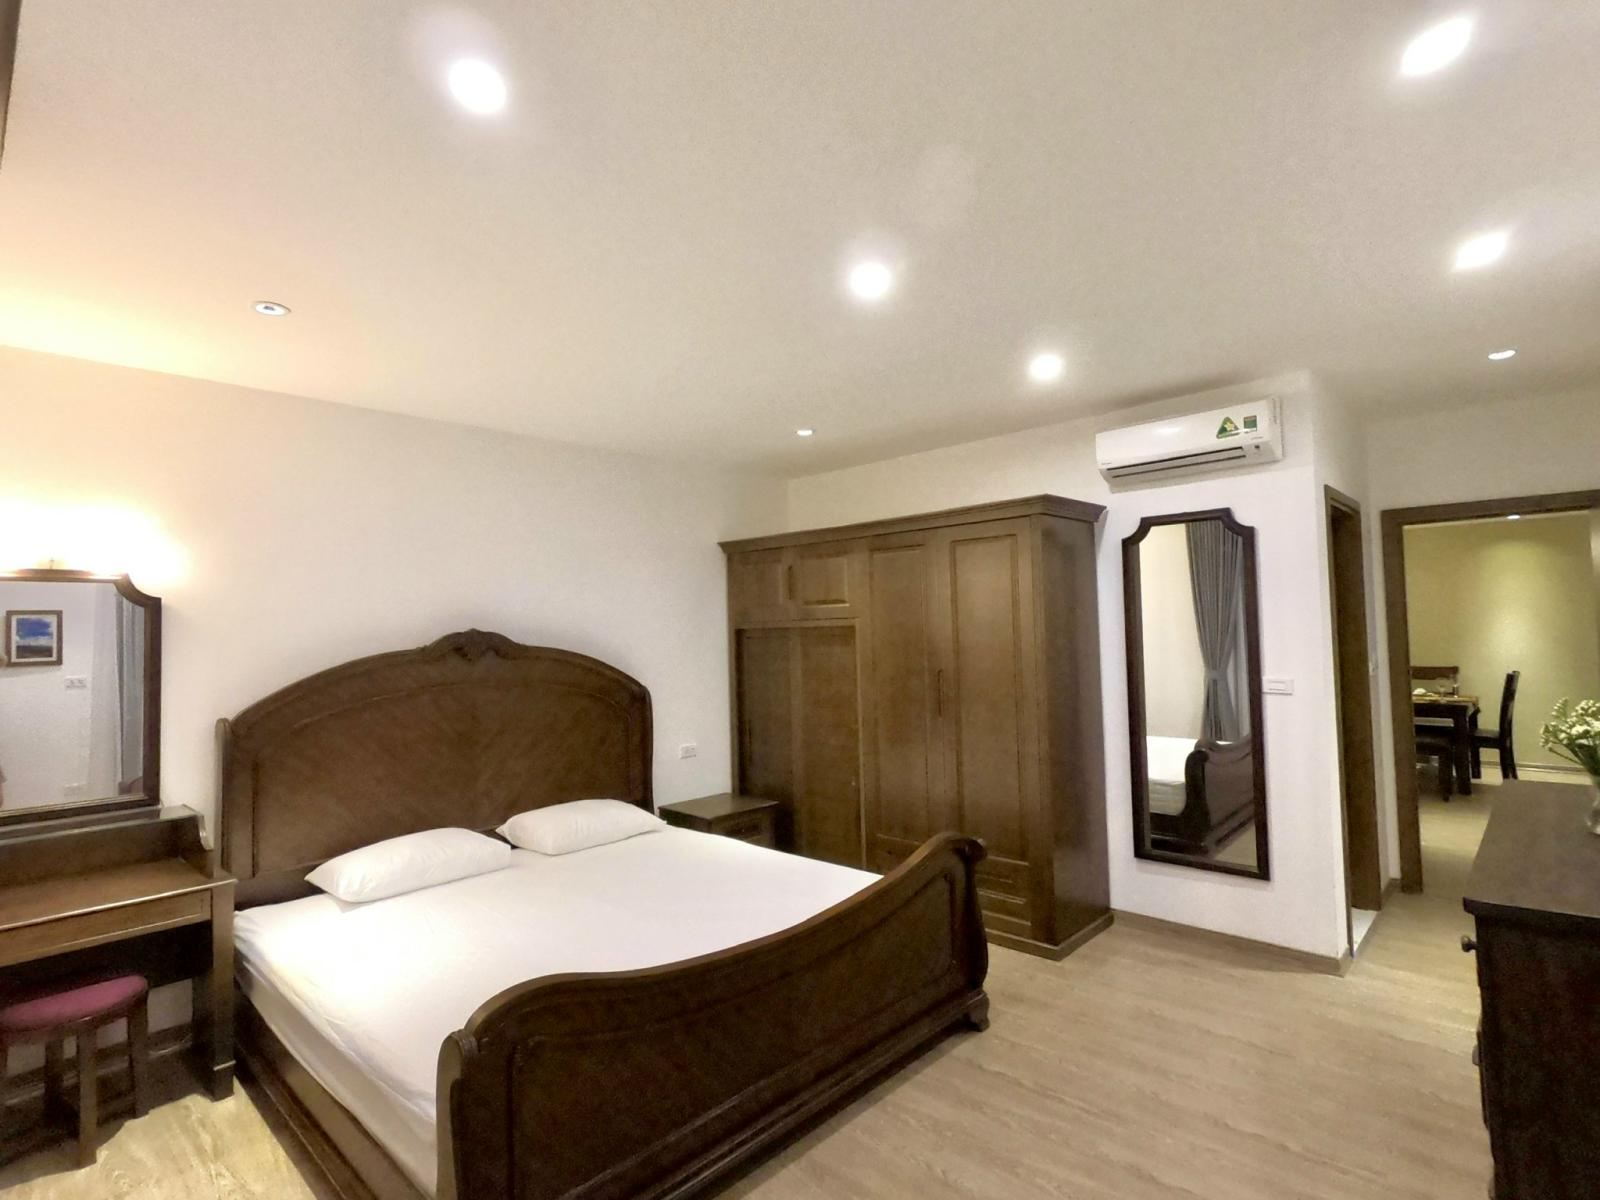 Cho thuê căn hộ 3 ngủ diện tích 110m2 dự án Tân Hoàng Minh - Quảng An, nội thất cao cấp, giá 35tr/tháng (ảnh thật)
 1024271